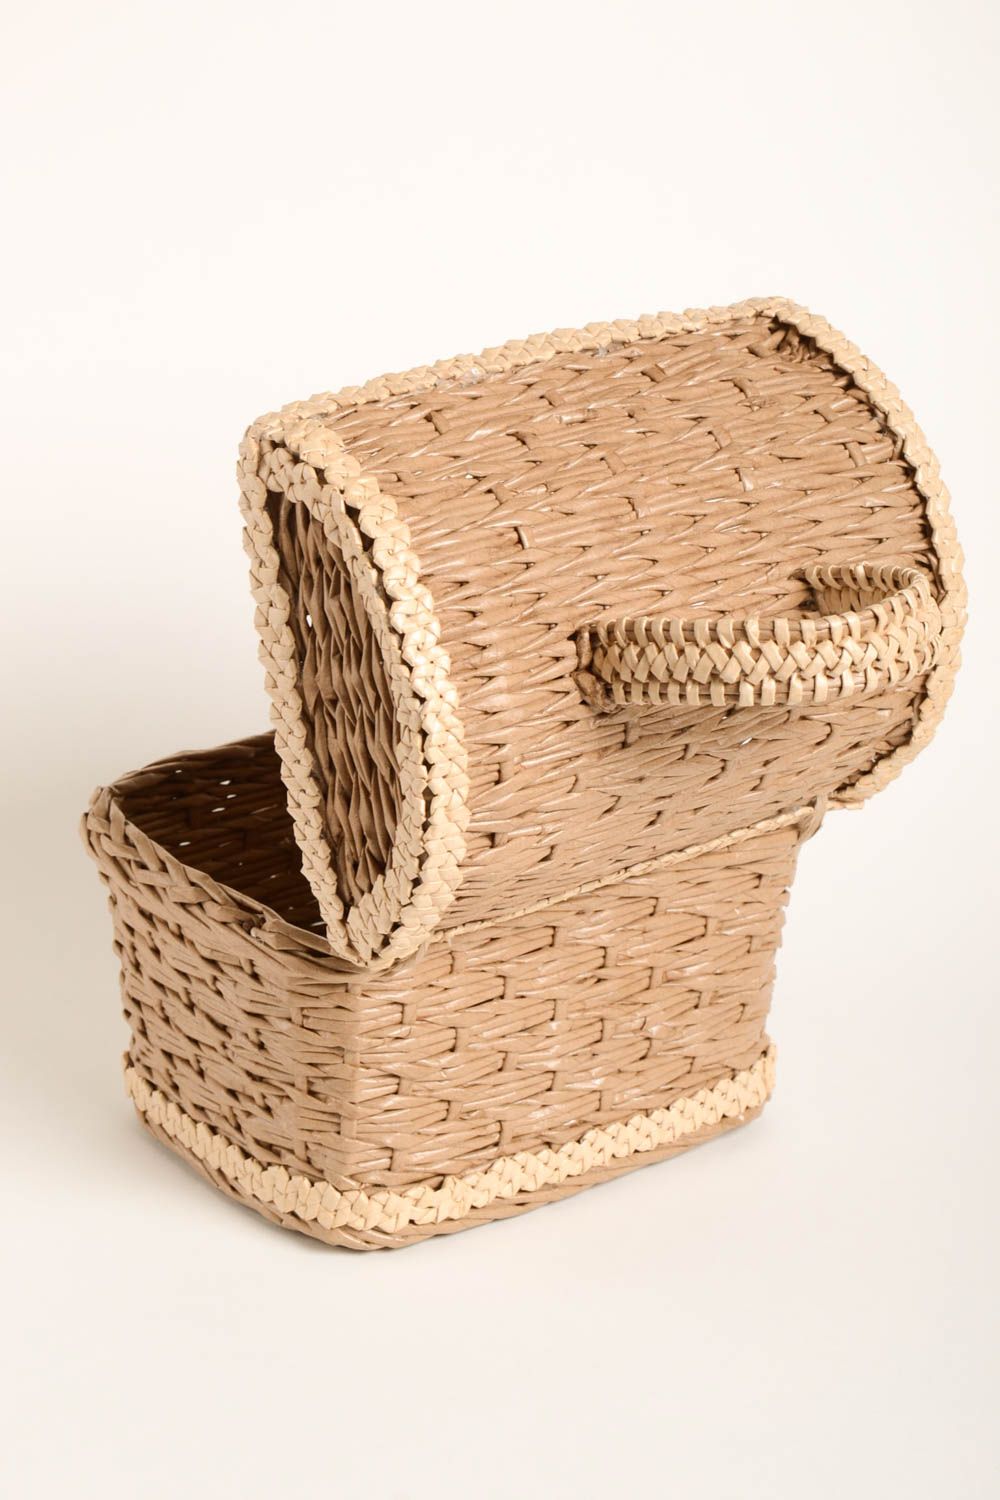 Handmade wicker basket wicker breadbox home decor ideas kitchen utensils photo 3